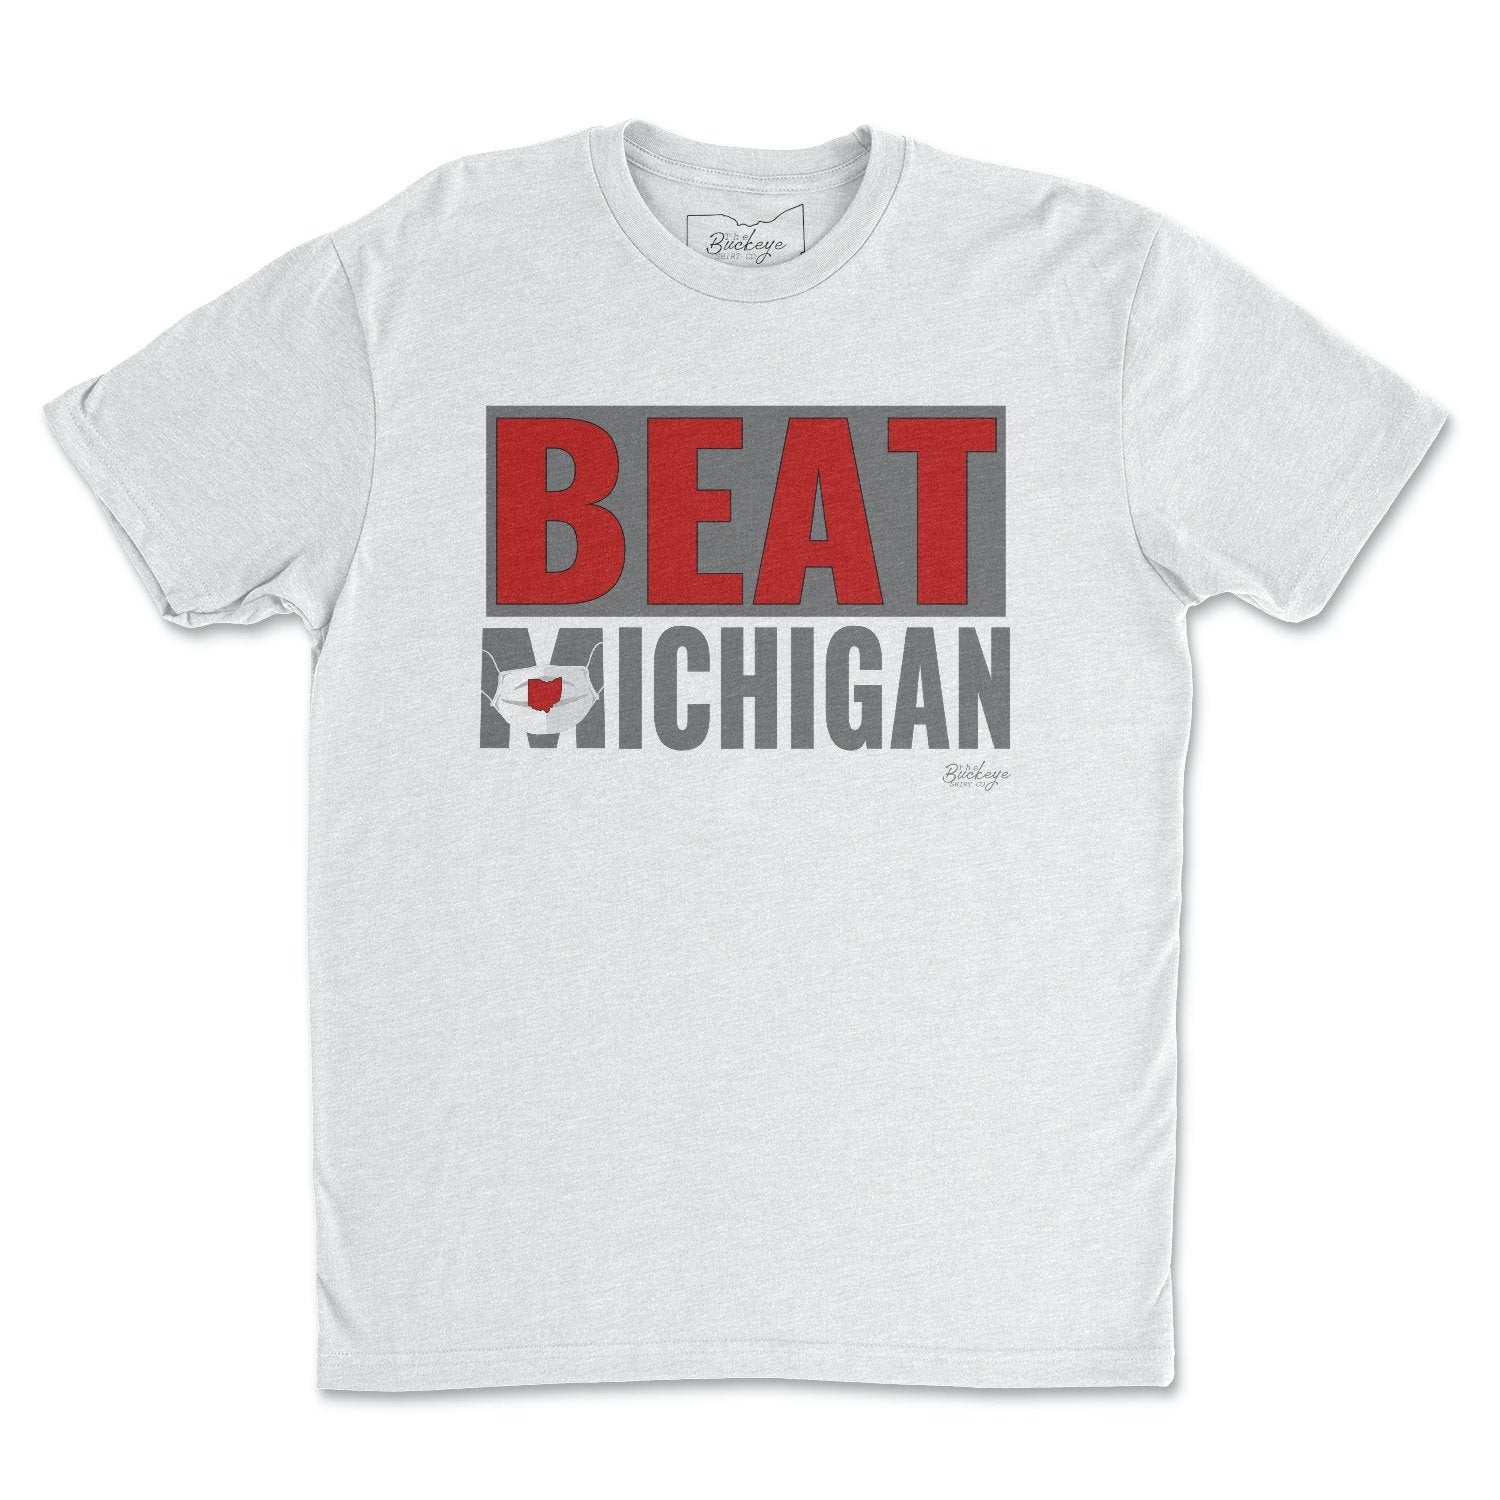 Beat Ichigan T-Shirt - Buckeye Shirt Co.